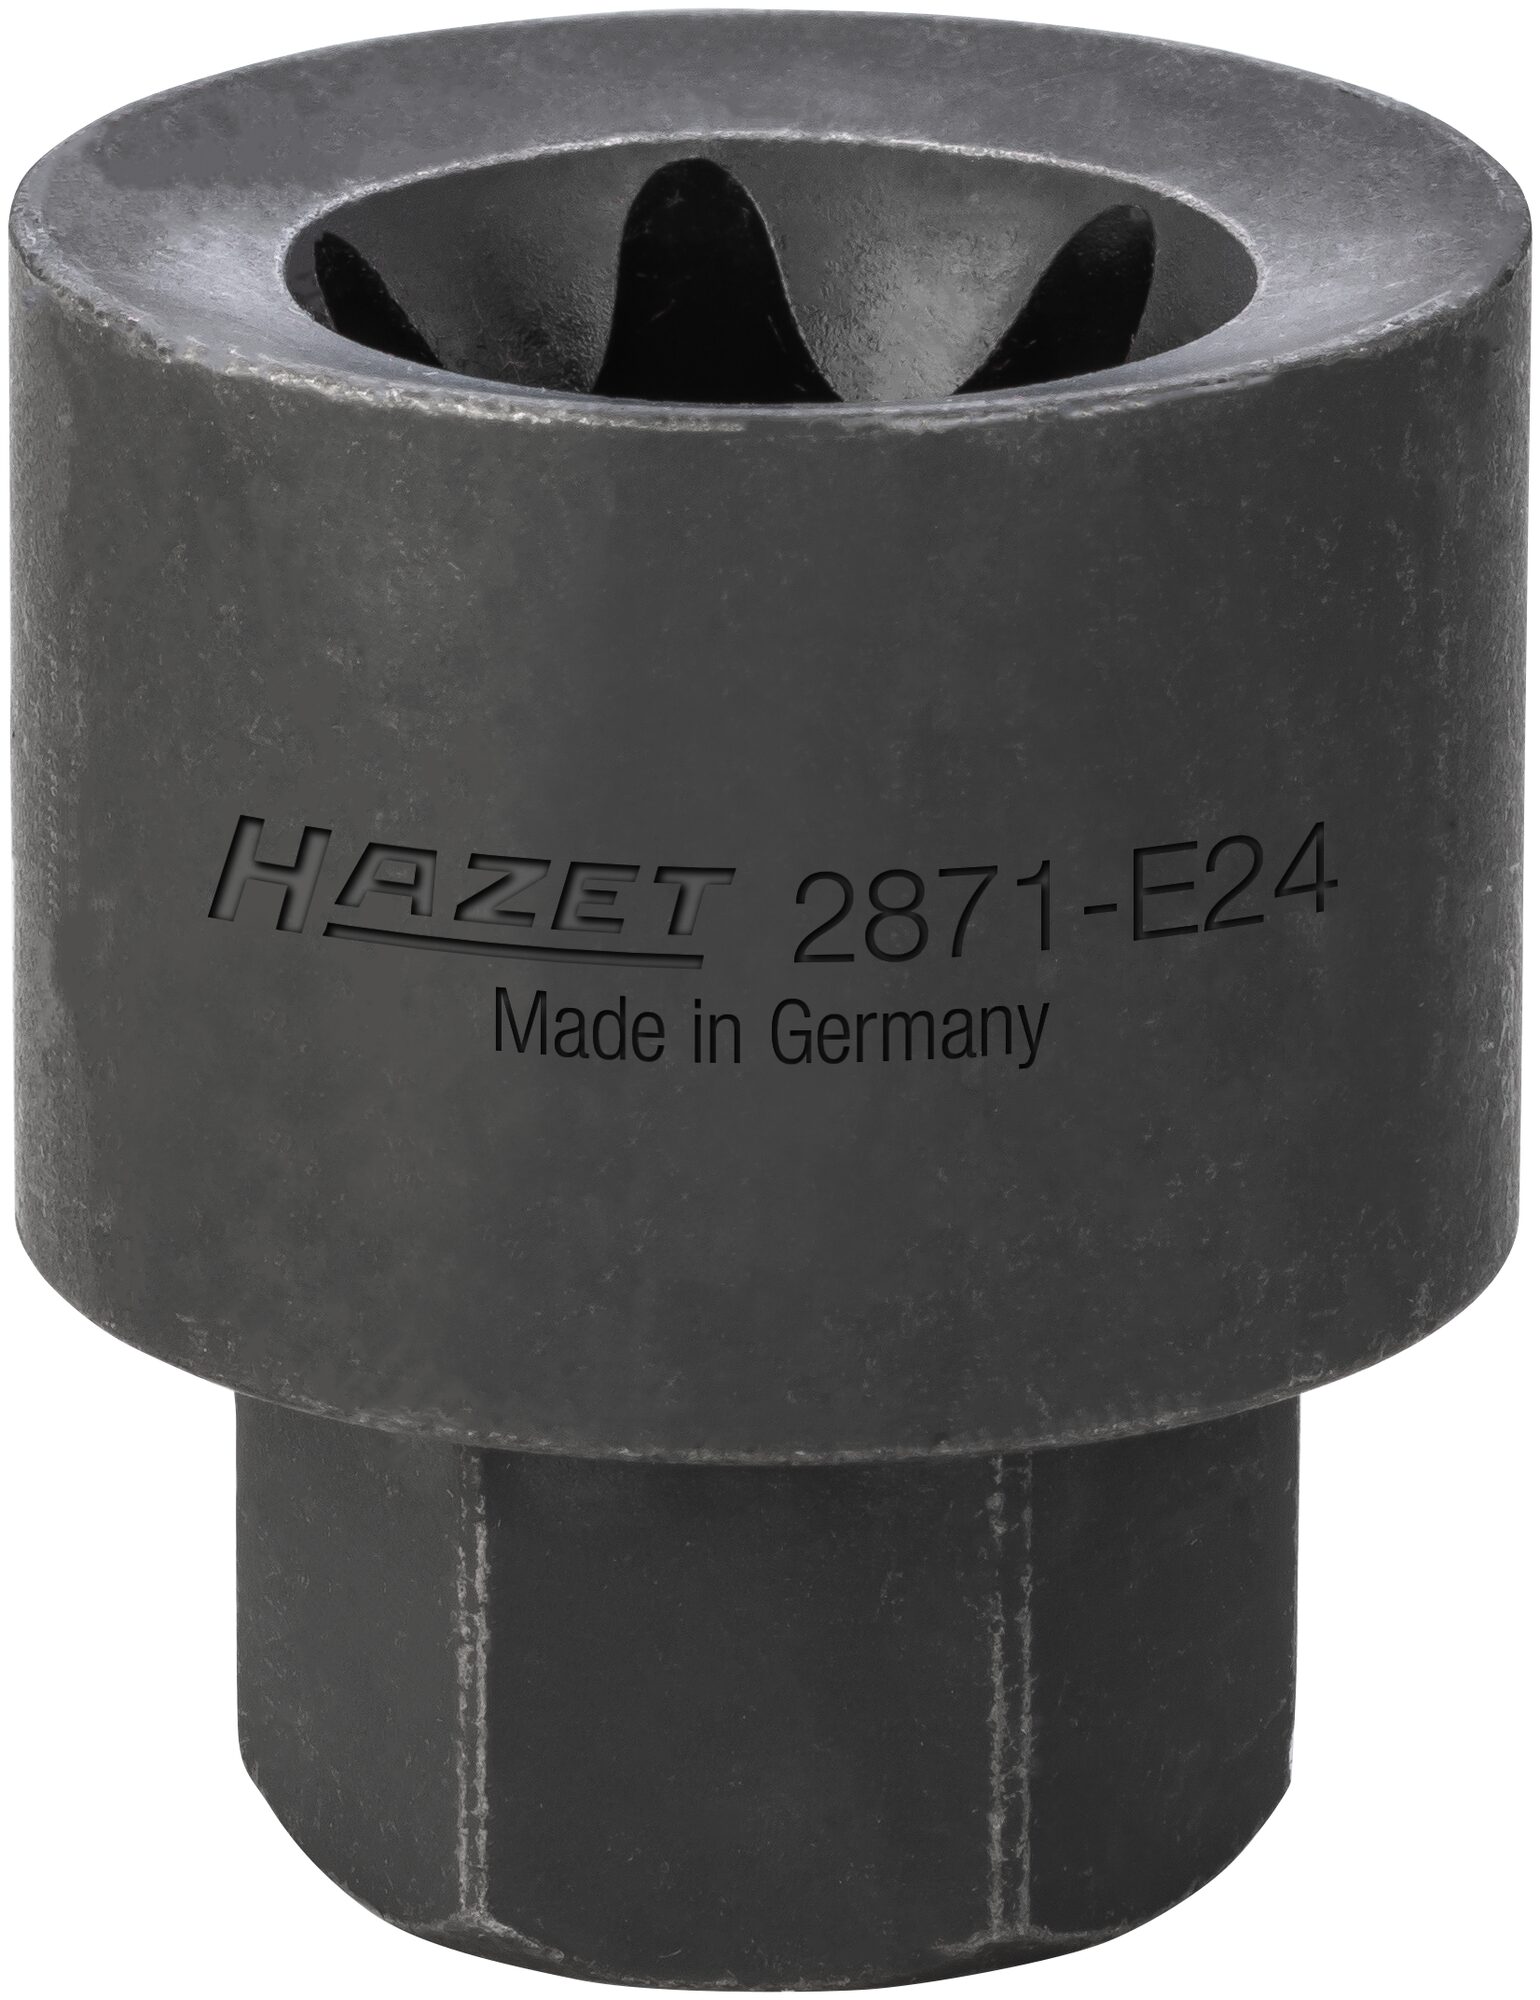 HAZET Bremssattel TORX® Einsatz 2871-E24 · Außen-Sechskant 22 mm · Außen TORX® Profil · E24